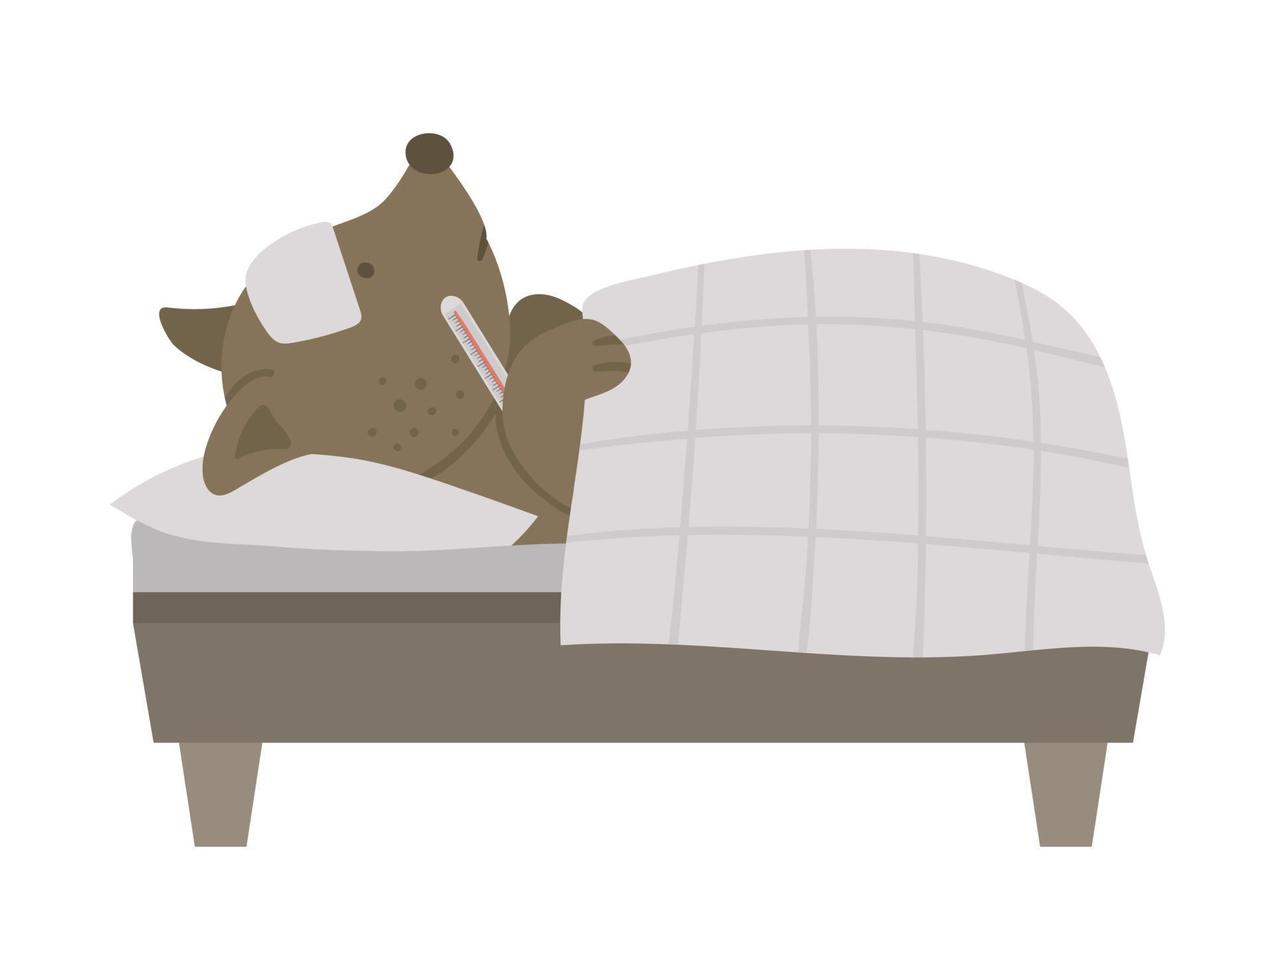 Vektorkrankes Tier im Bett. süßer hund mit thermometer mit fieber. lustiger krankenhauspatientencharakter. medizinische illustration für kinder. vektor